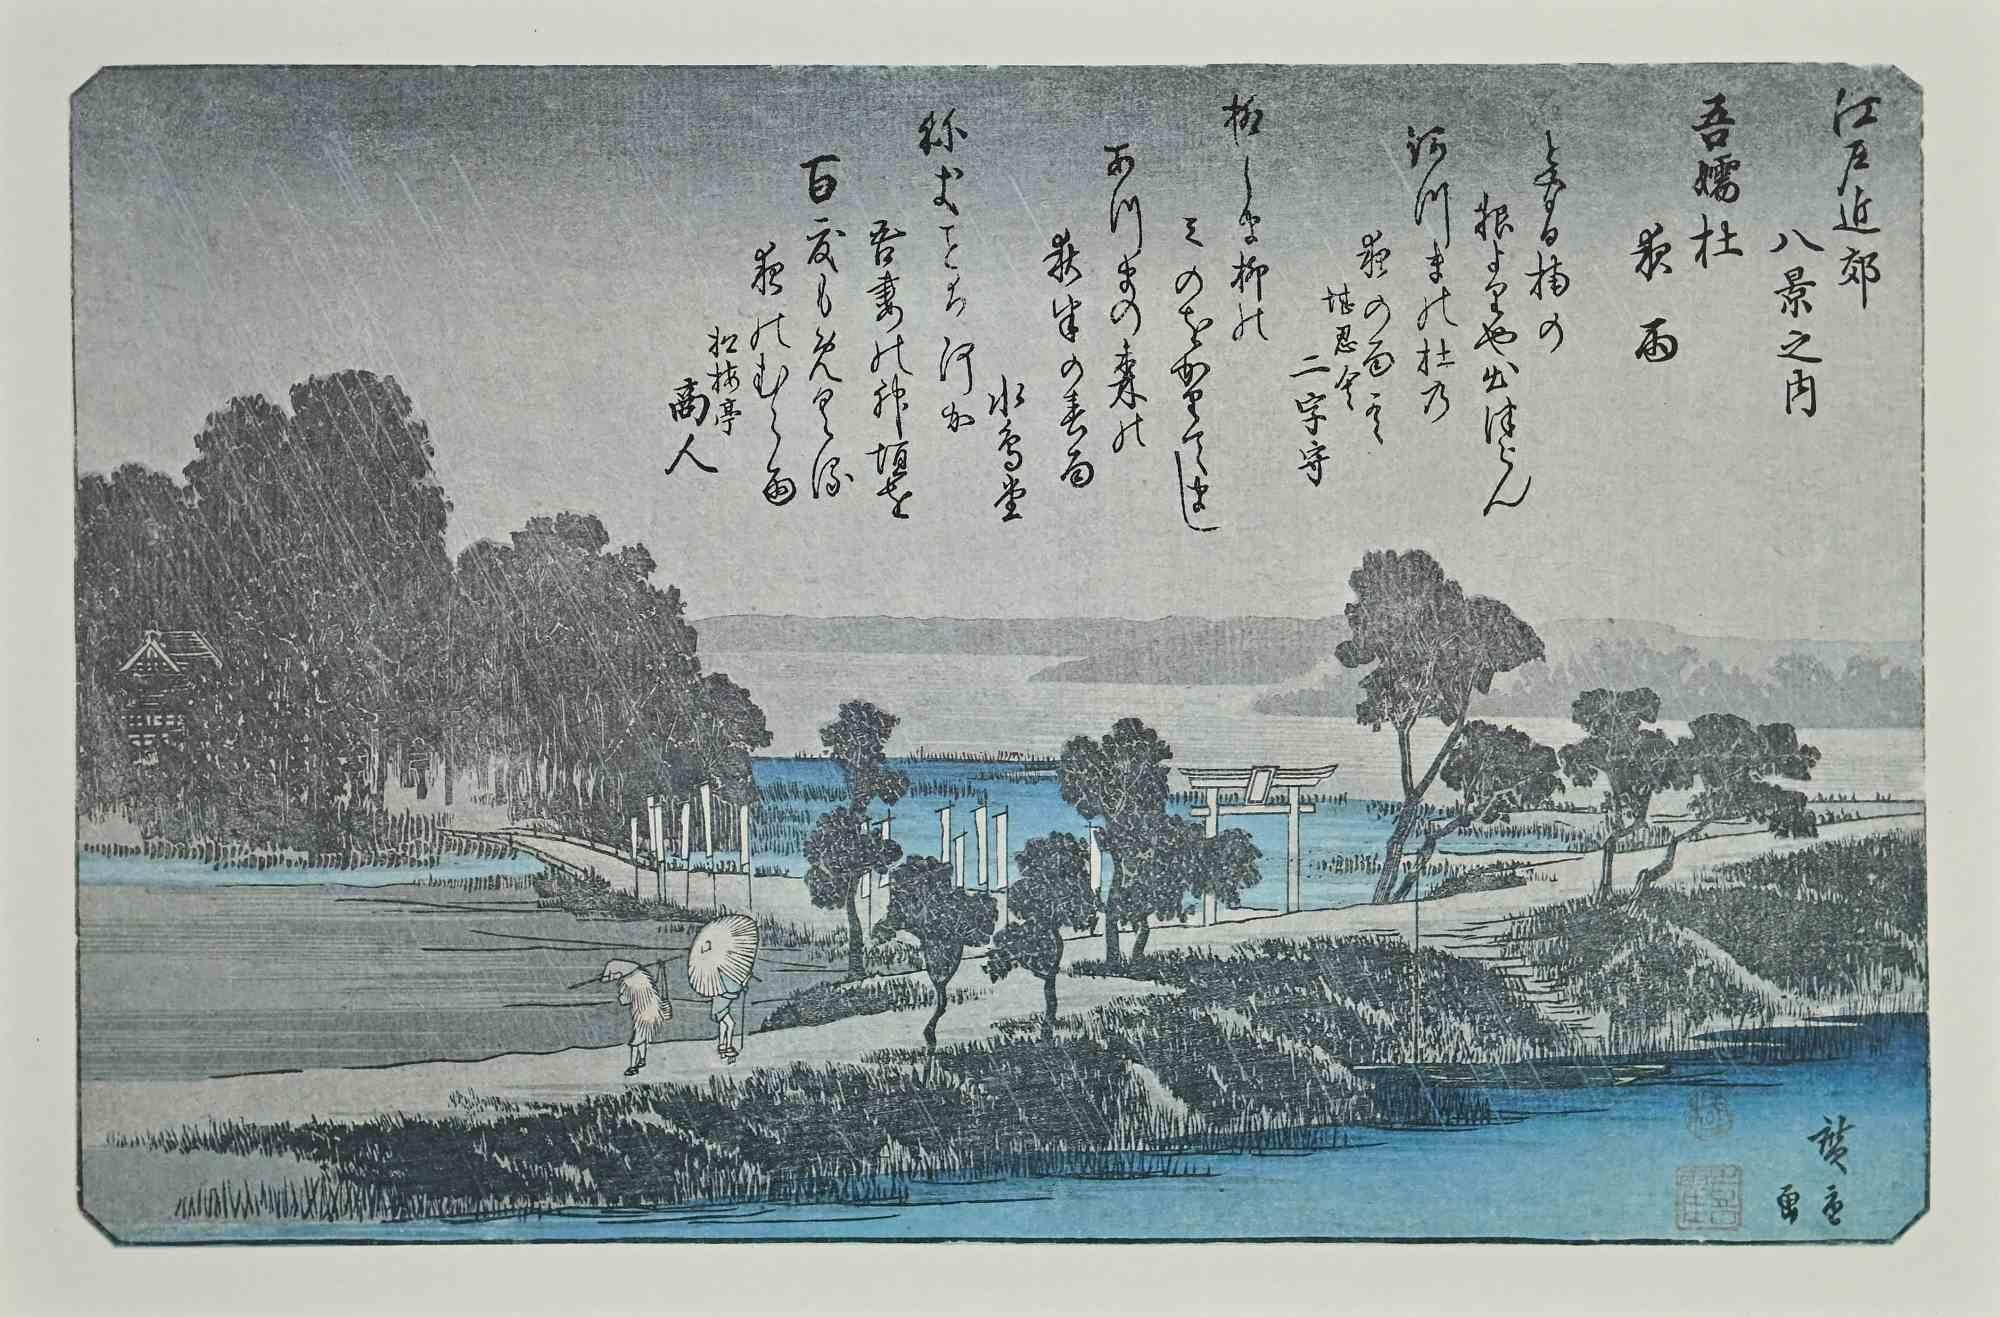 The Rain - Eight Scenic Spots in Suburban Edo ist ein modernes Kunstwerk aus der Mitte des 20. Jahrhunderts.

Mischkolorierte Lithografie nach einem Holzschnitt des großen japanischen Künstlers Utagawa Hiroshige aus dem 19. Jahrhundert.

Sehr guter